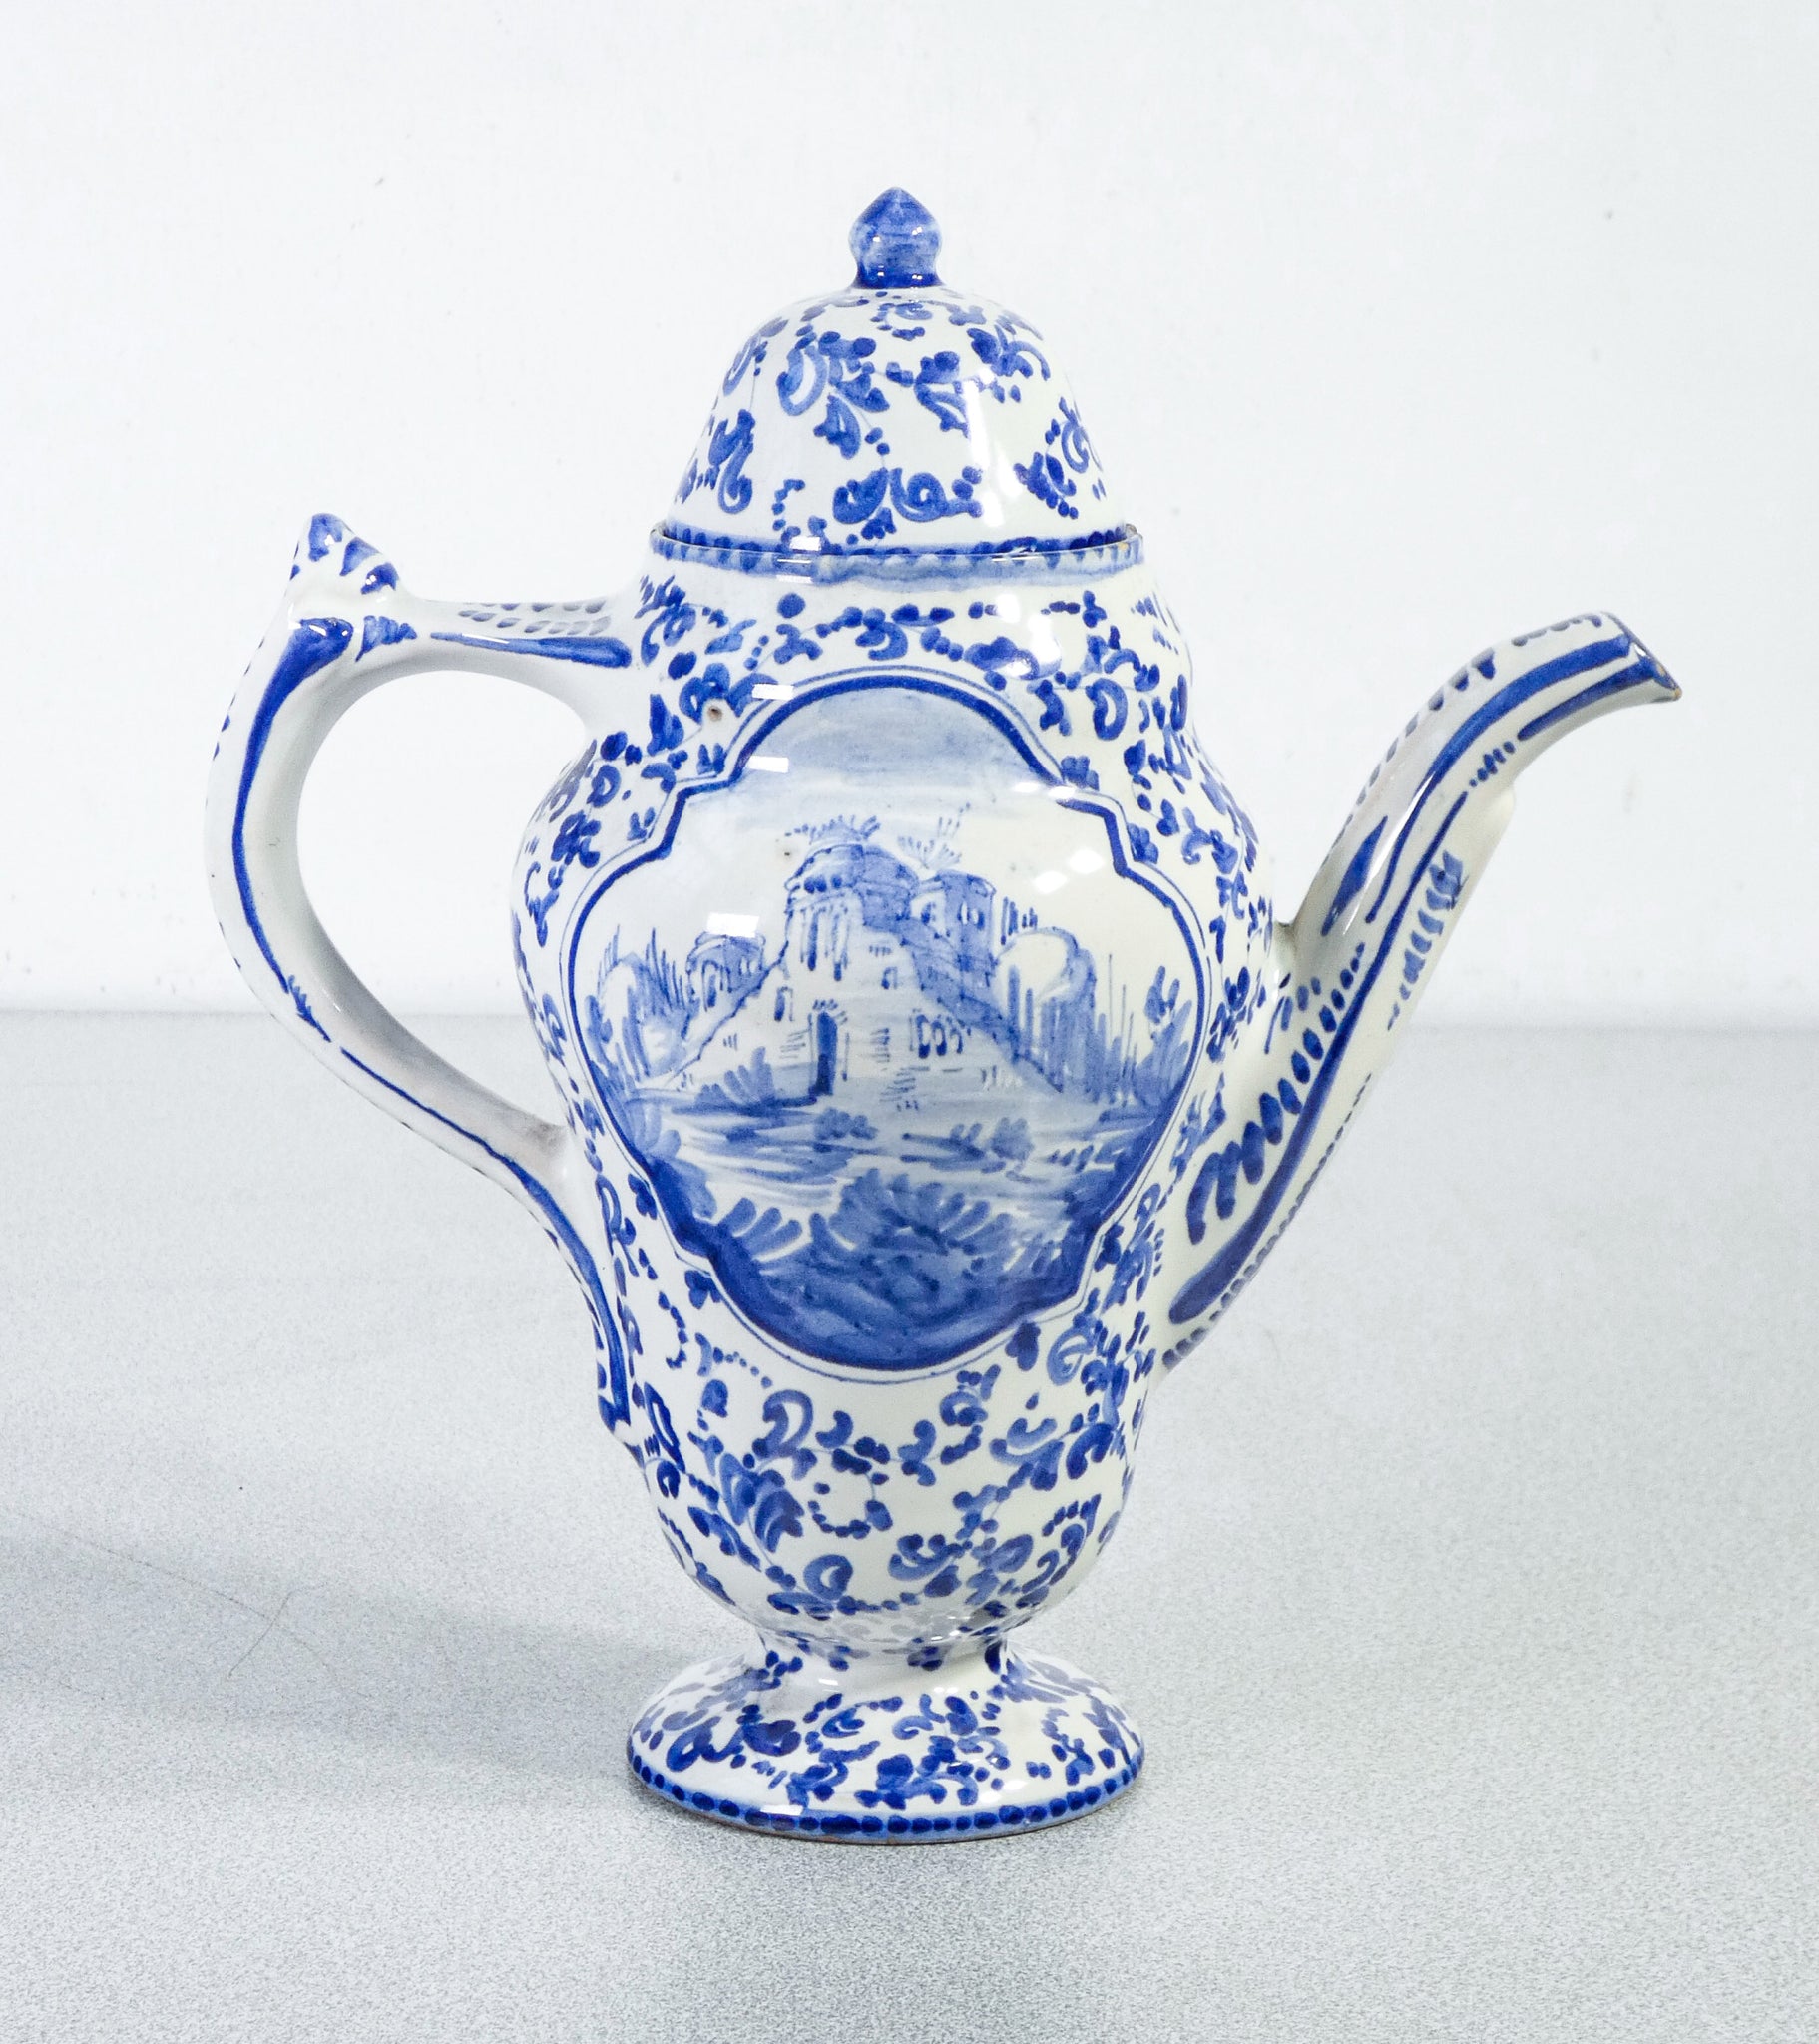 brocca alba docilia albisola ceramica dipinto a mano putti vaso epoca 1900